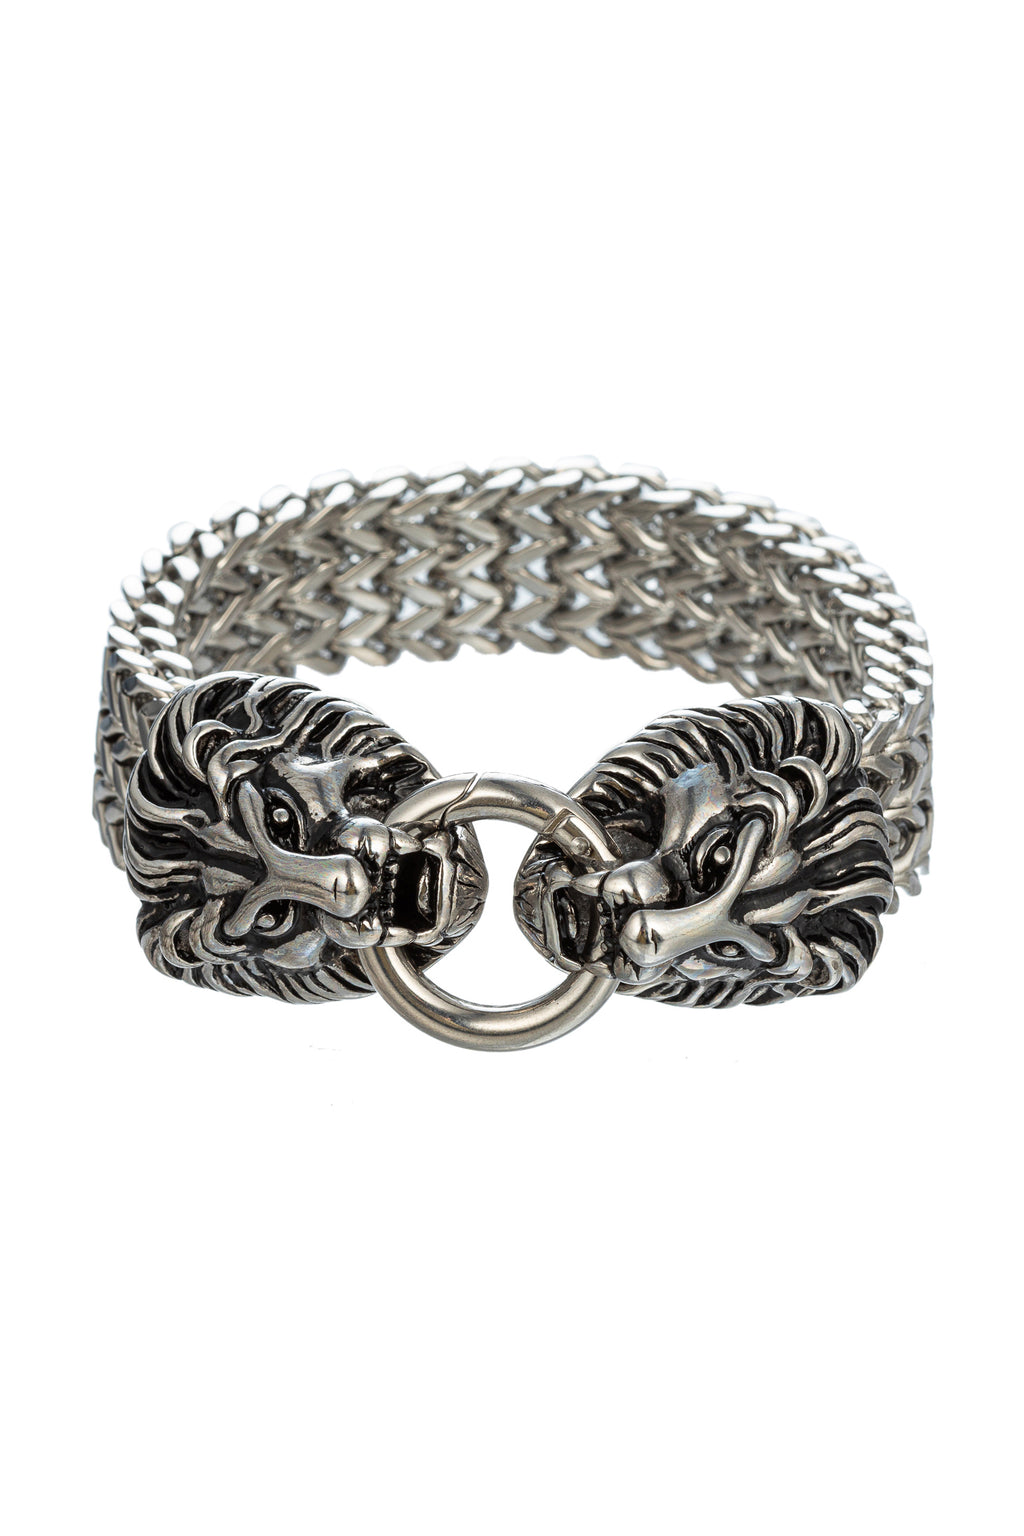 Silver tone titanium double lion head chain bracelet.